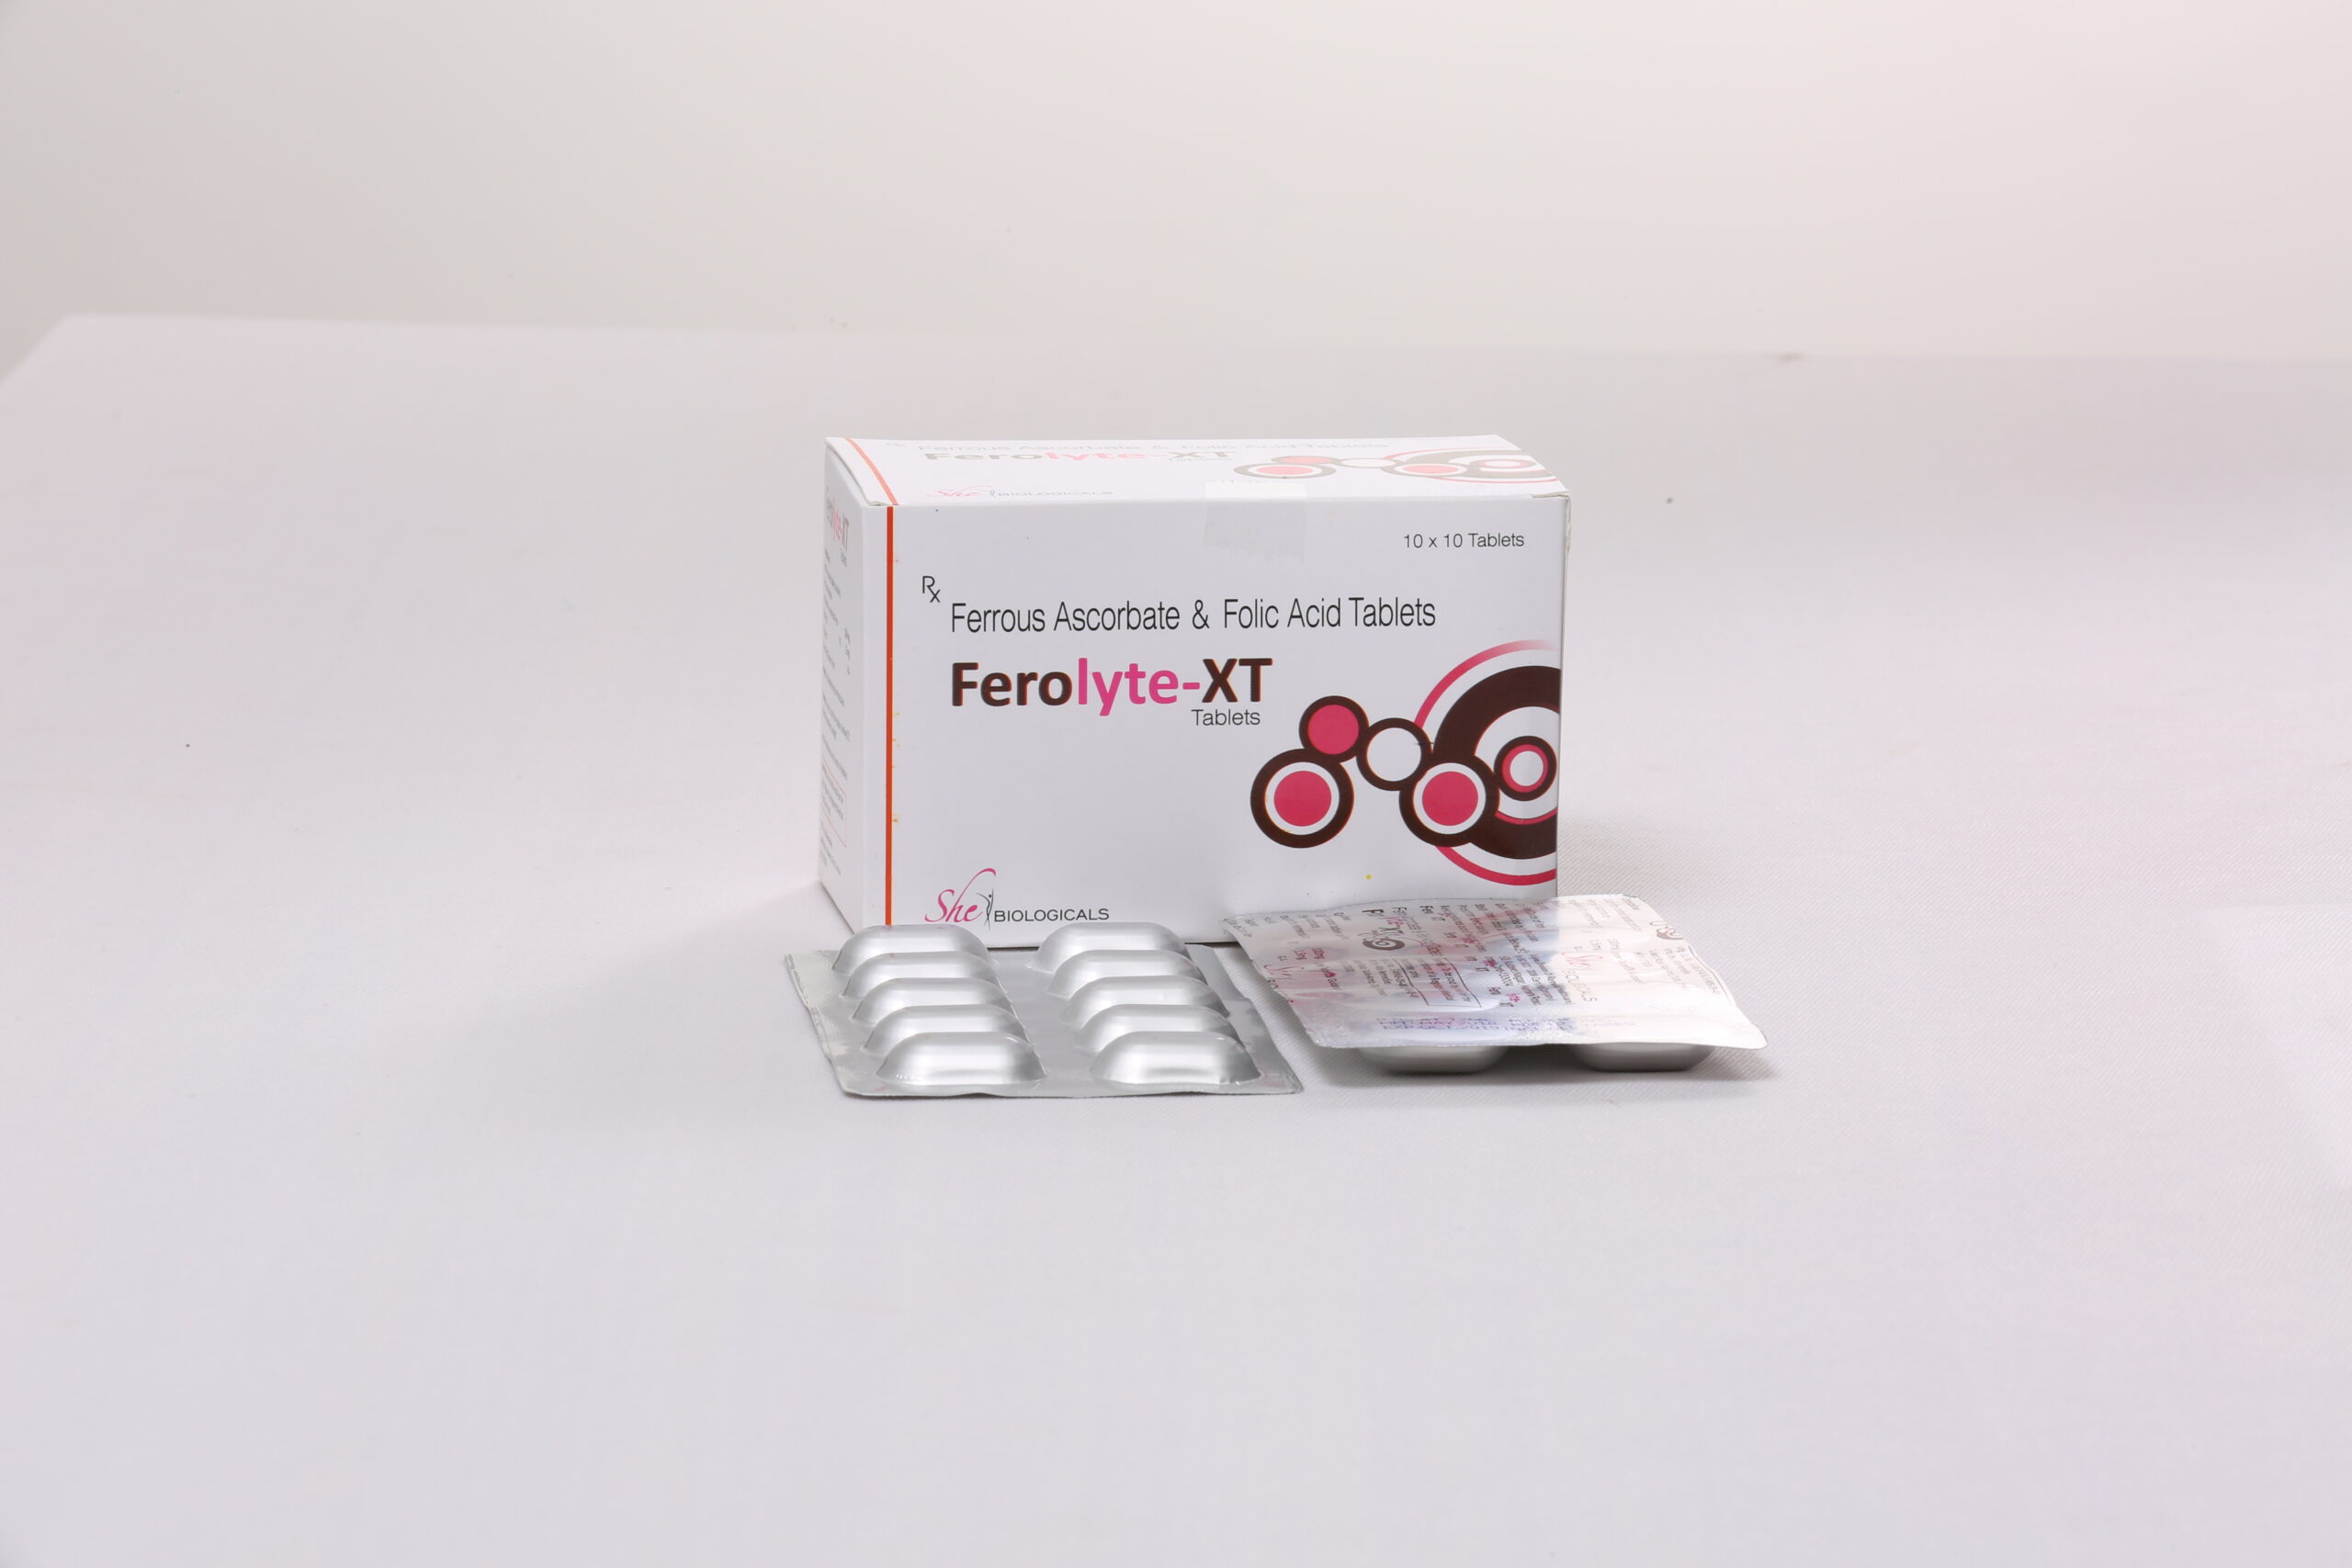 FEROLYTE-XT (Ferrous Ascorbate Folic Acid)